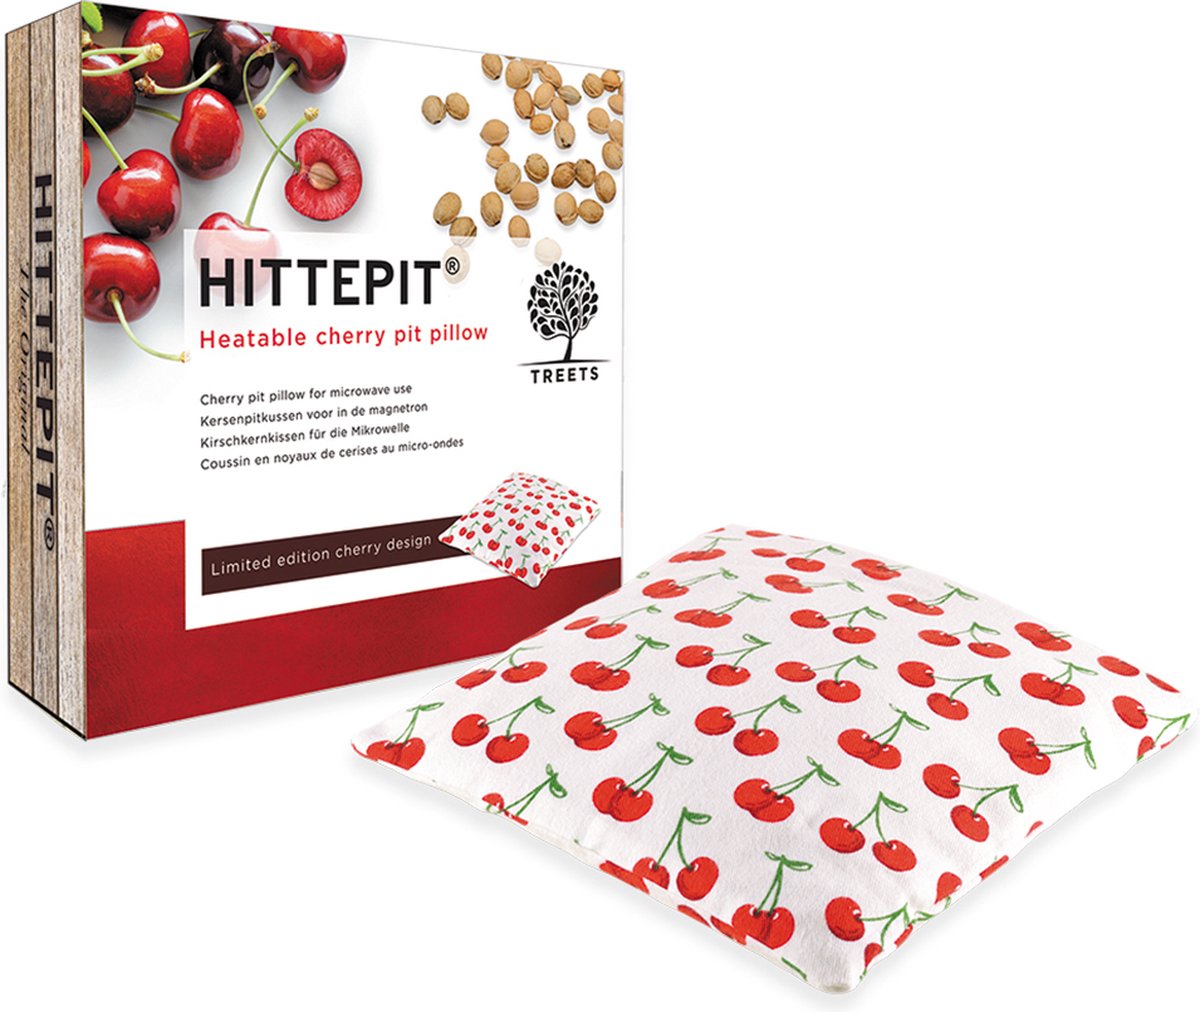 Treets HITTEPIT Vierkant met kersendesign – Kersenpitkussen - duurzaam warmte kussen - verwarmbaar kussen - helpt spieren te ontspannen - Treets